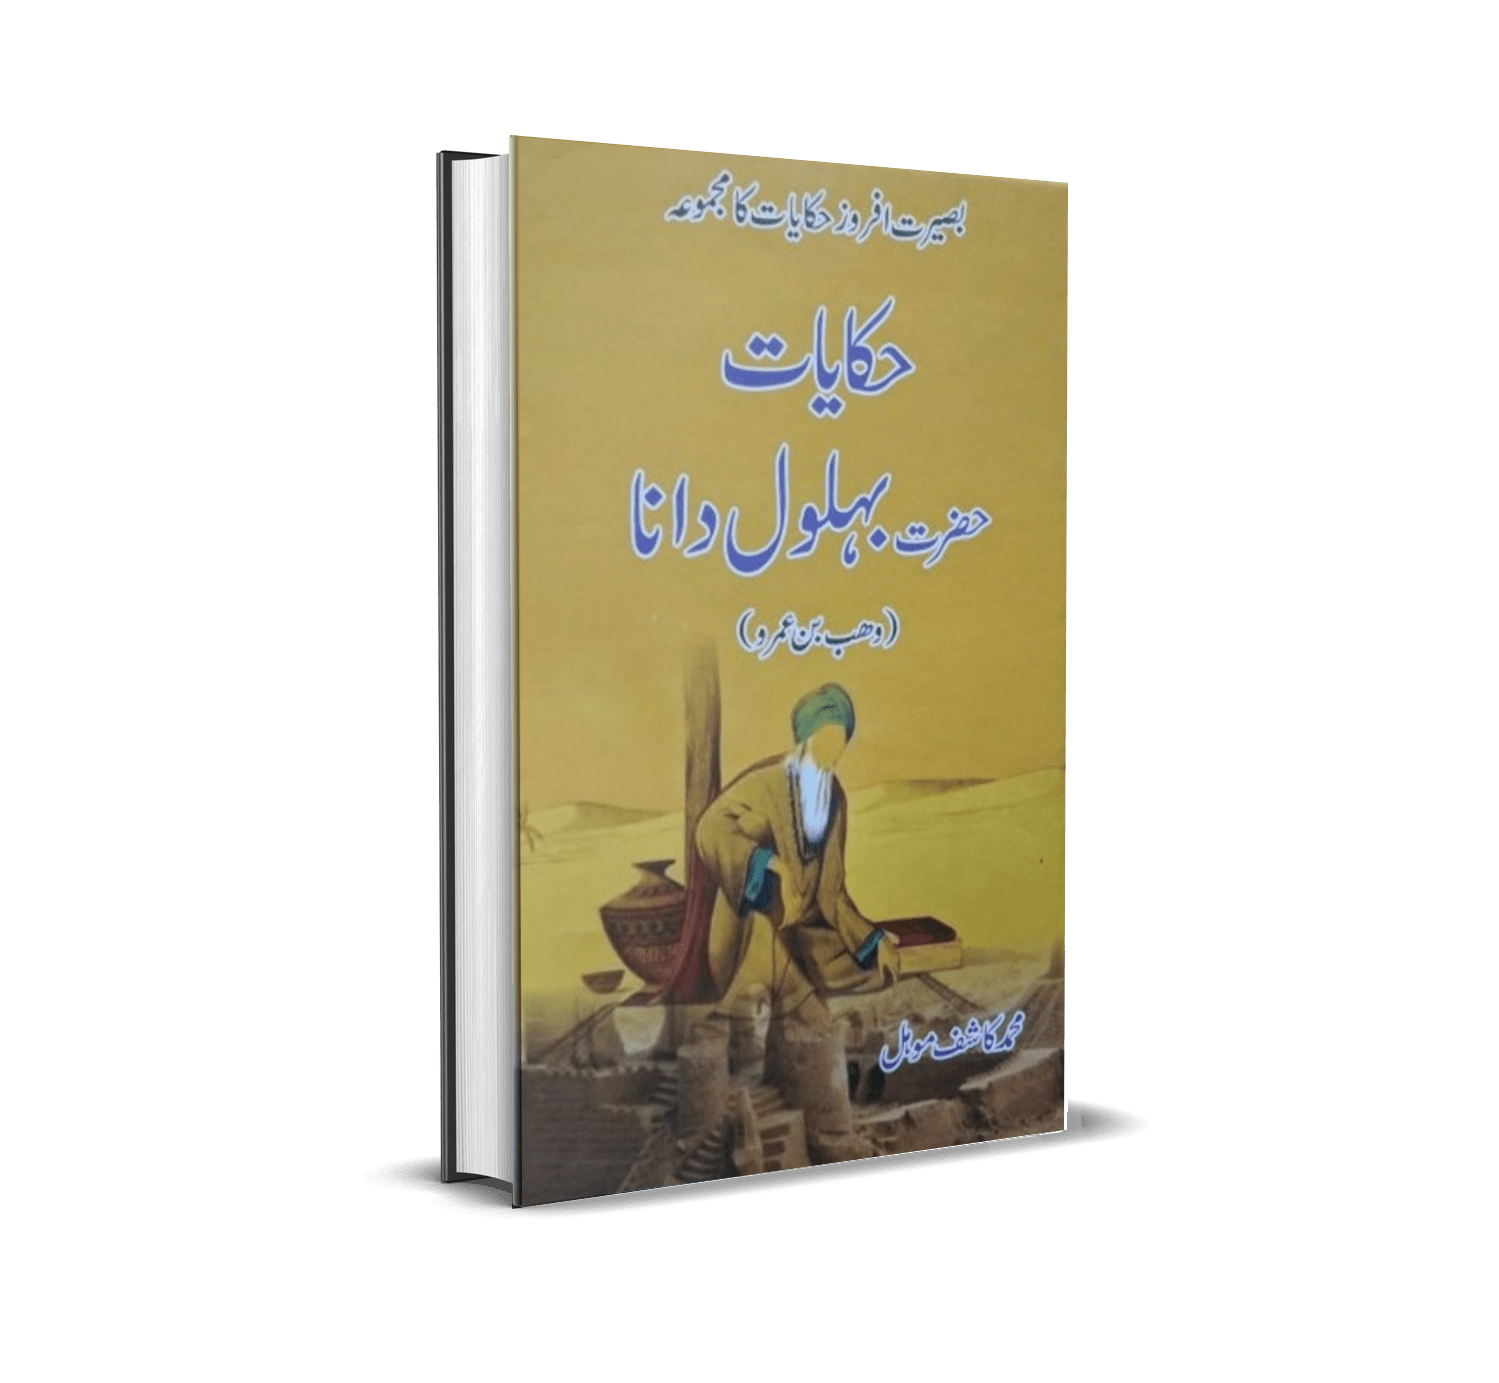 Hikayat e Hazrat Buhlol Dana by Muhammad Kashif Mohal